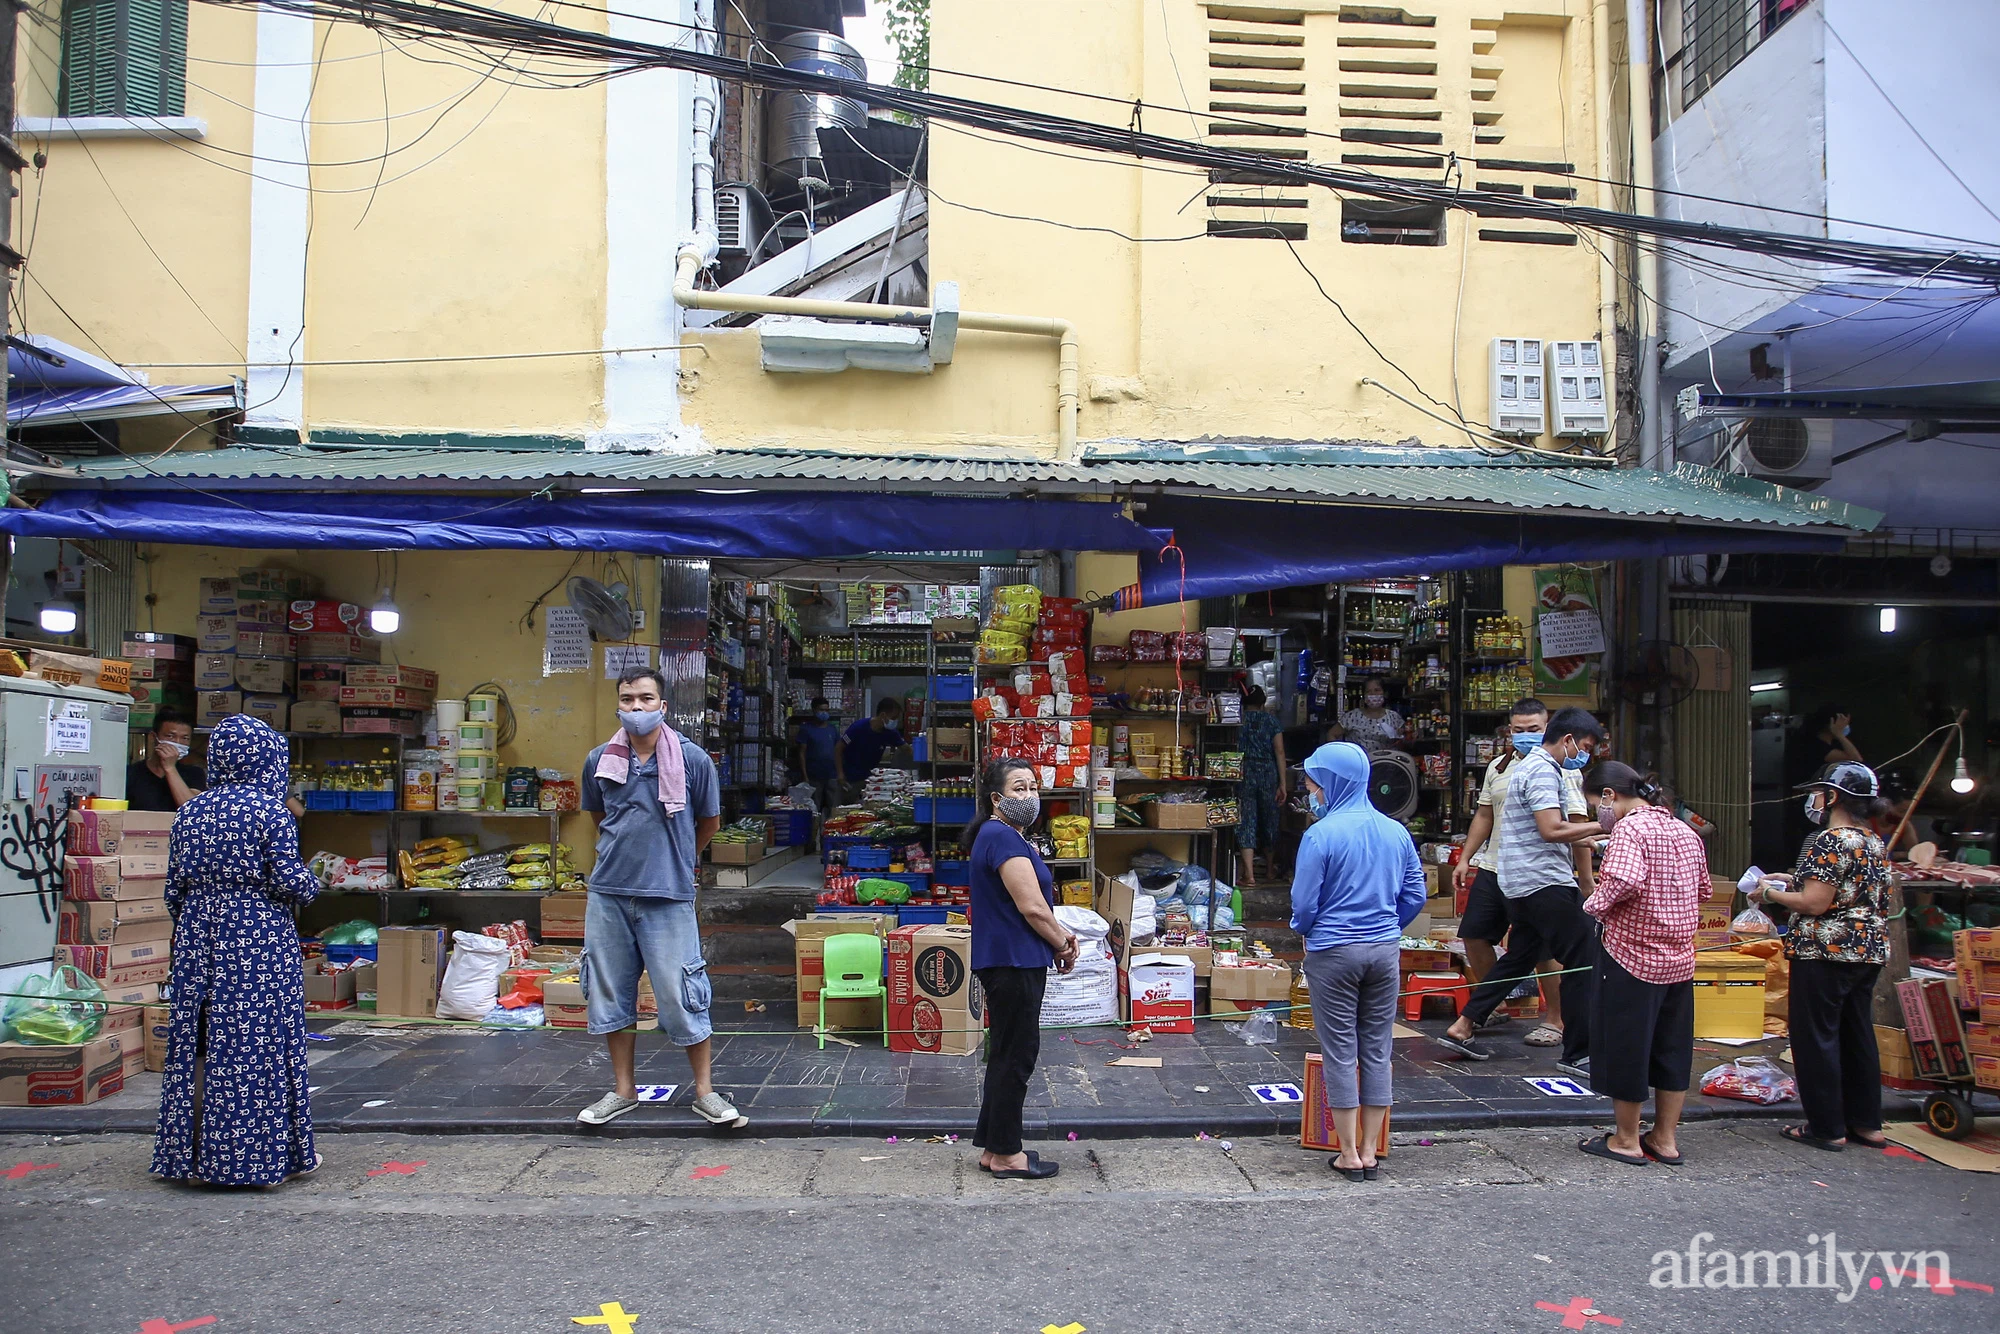 Ngày đầu giãn cách theo Chỉ thị 16, khu chợ ở Hà Nội kẻ vạch cách nhau 2 m, người mua kẻ bán tuy xa mặt nhưng không cách lòng - Ảnh 7.